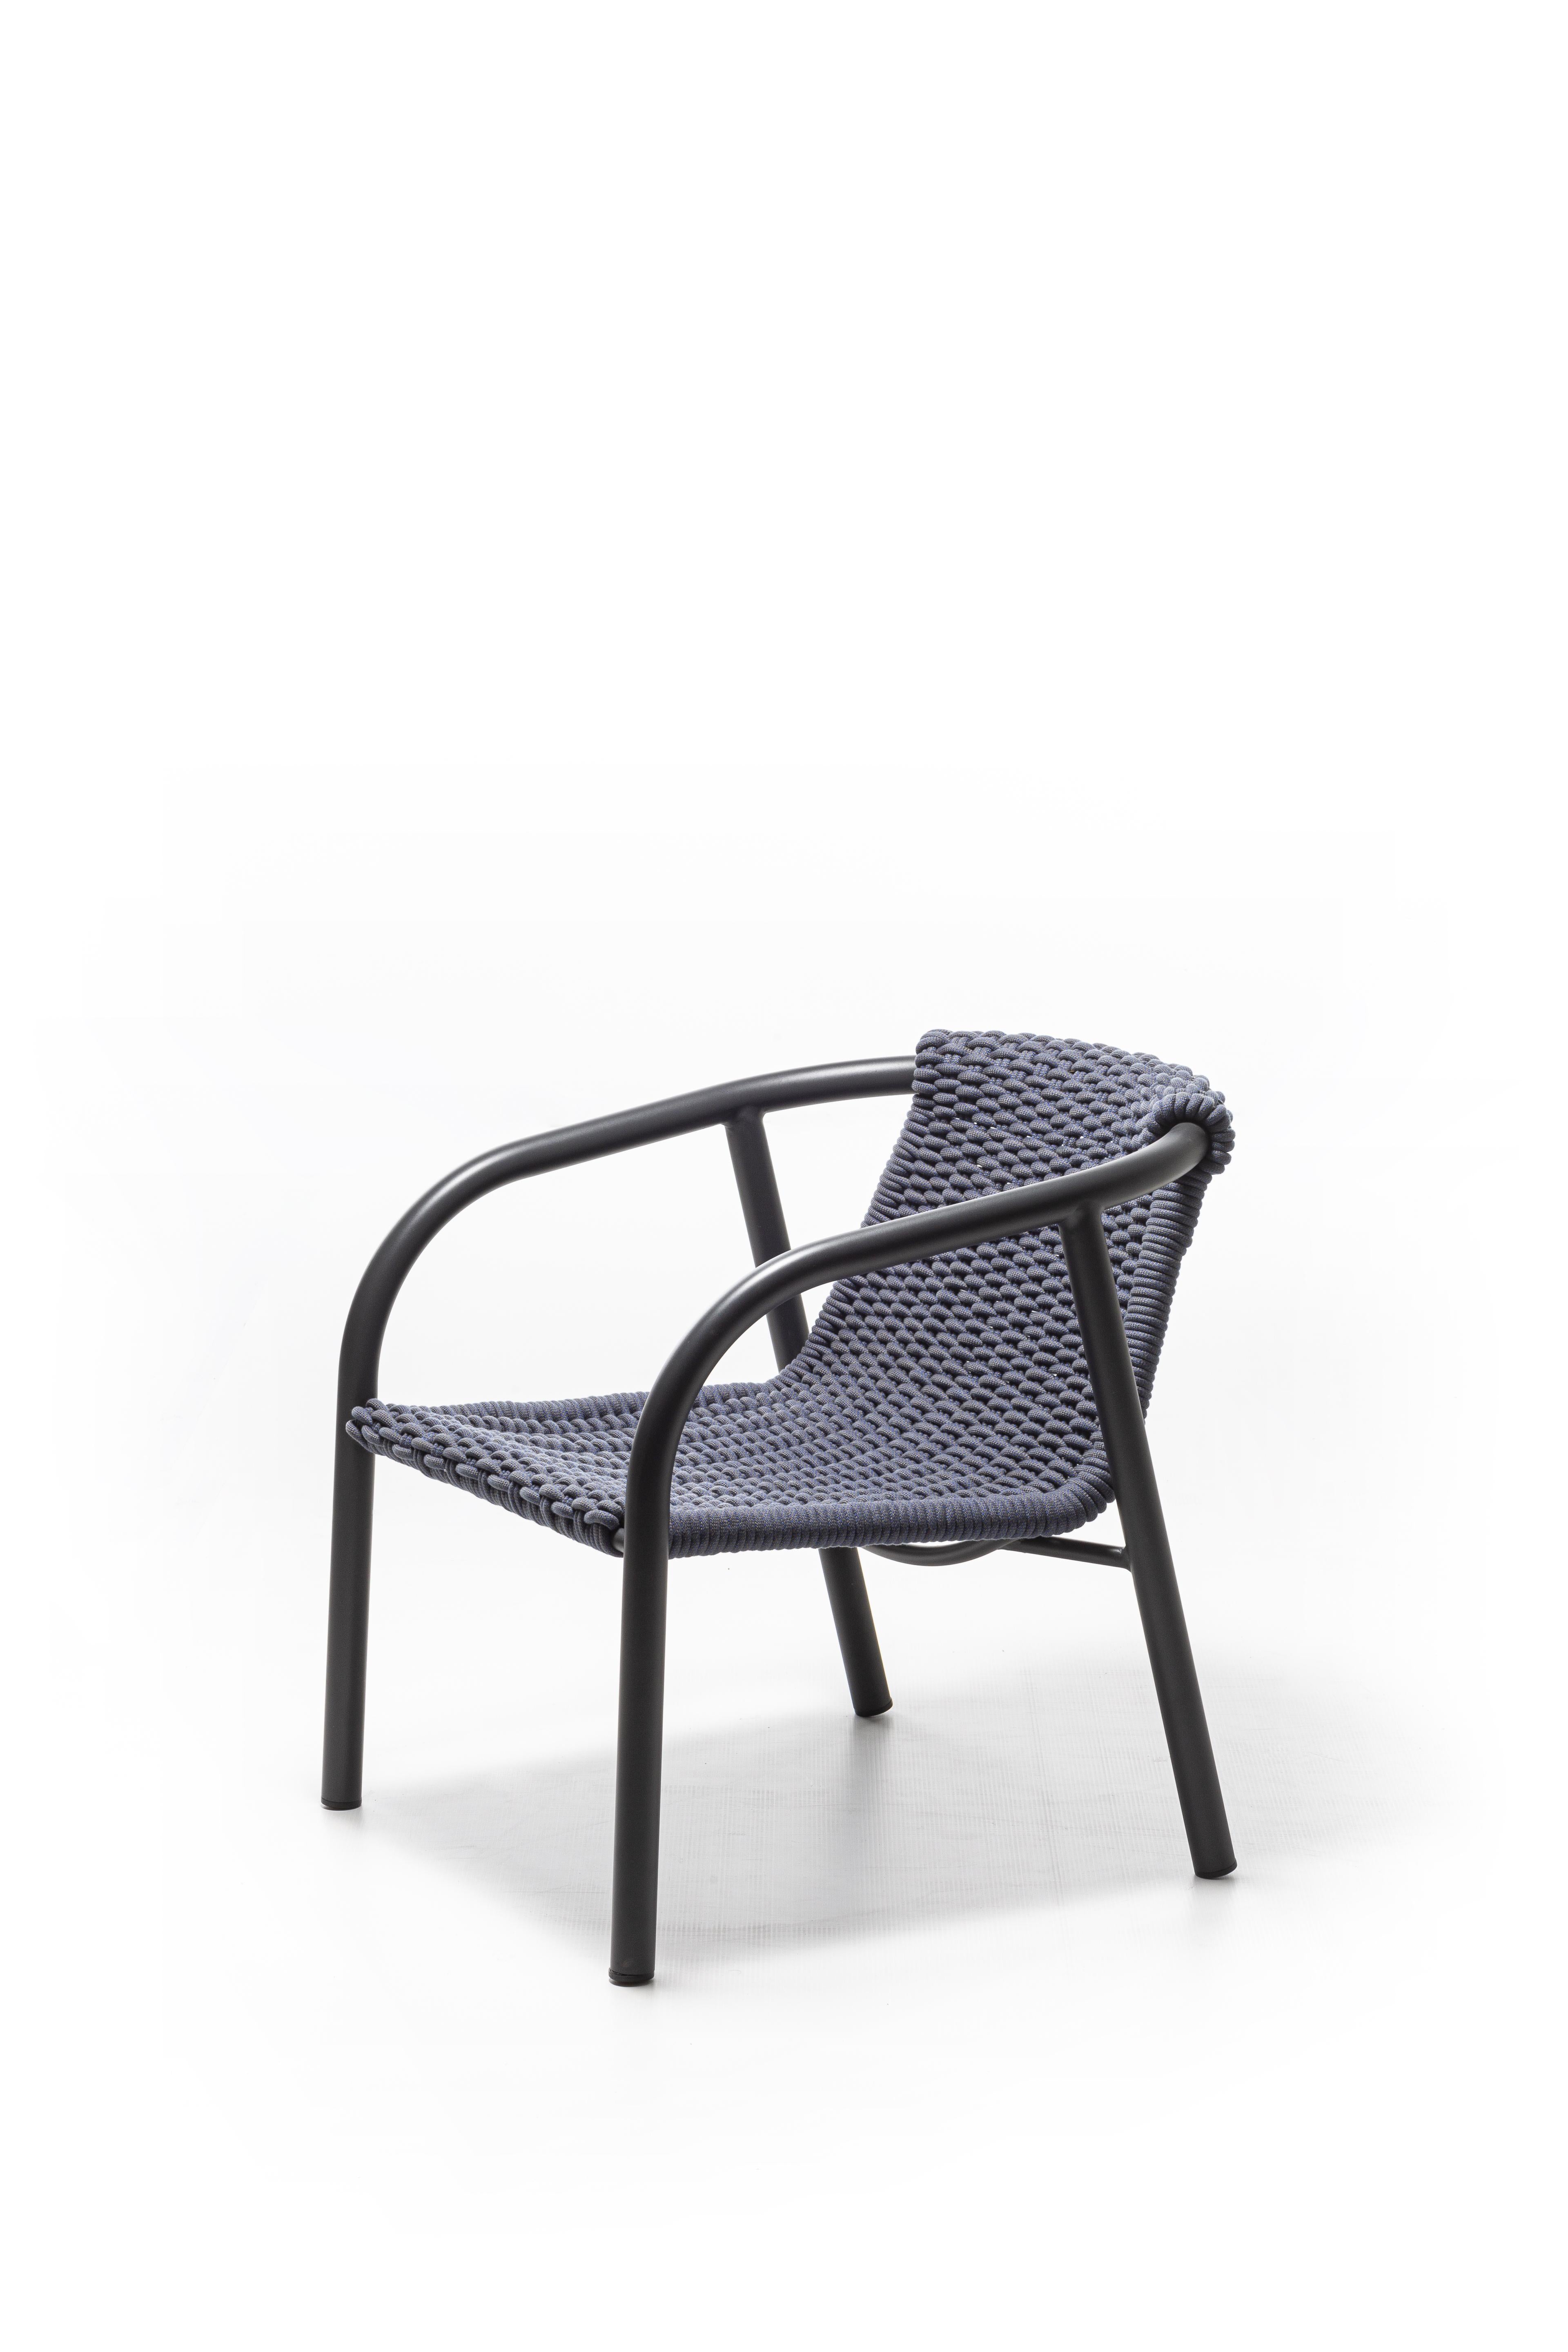 La chaise longue Ken 26, caractérisée par un style minimal et informel, est formée d'une structure en aluminium tubulaire laqué blanc ou gris mat, un métal unique pour ses qualités techniques, associé à un tissage artisanal en corde technique de